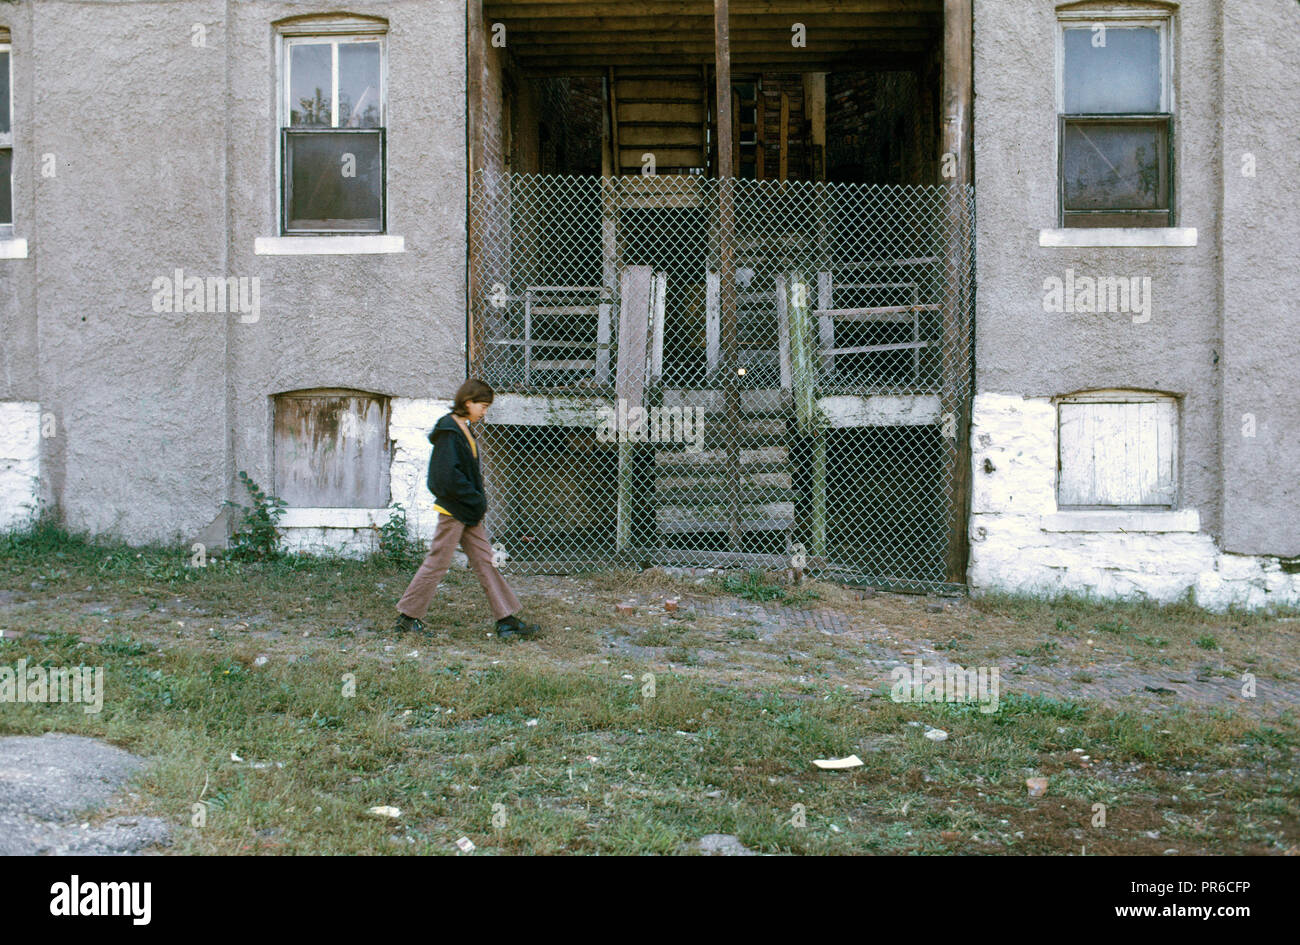 Octobre 1973 - Kansas City - Les résidents de Mulky Square, un quartier à faible revenu sur la ville, côté ouest, face à un déplacement à grande échelle par une nouvelle autoroute (I-635) Banque D'Images